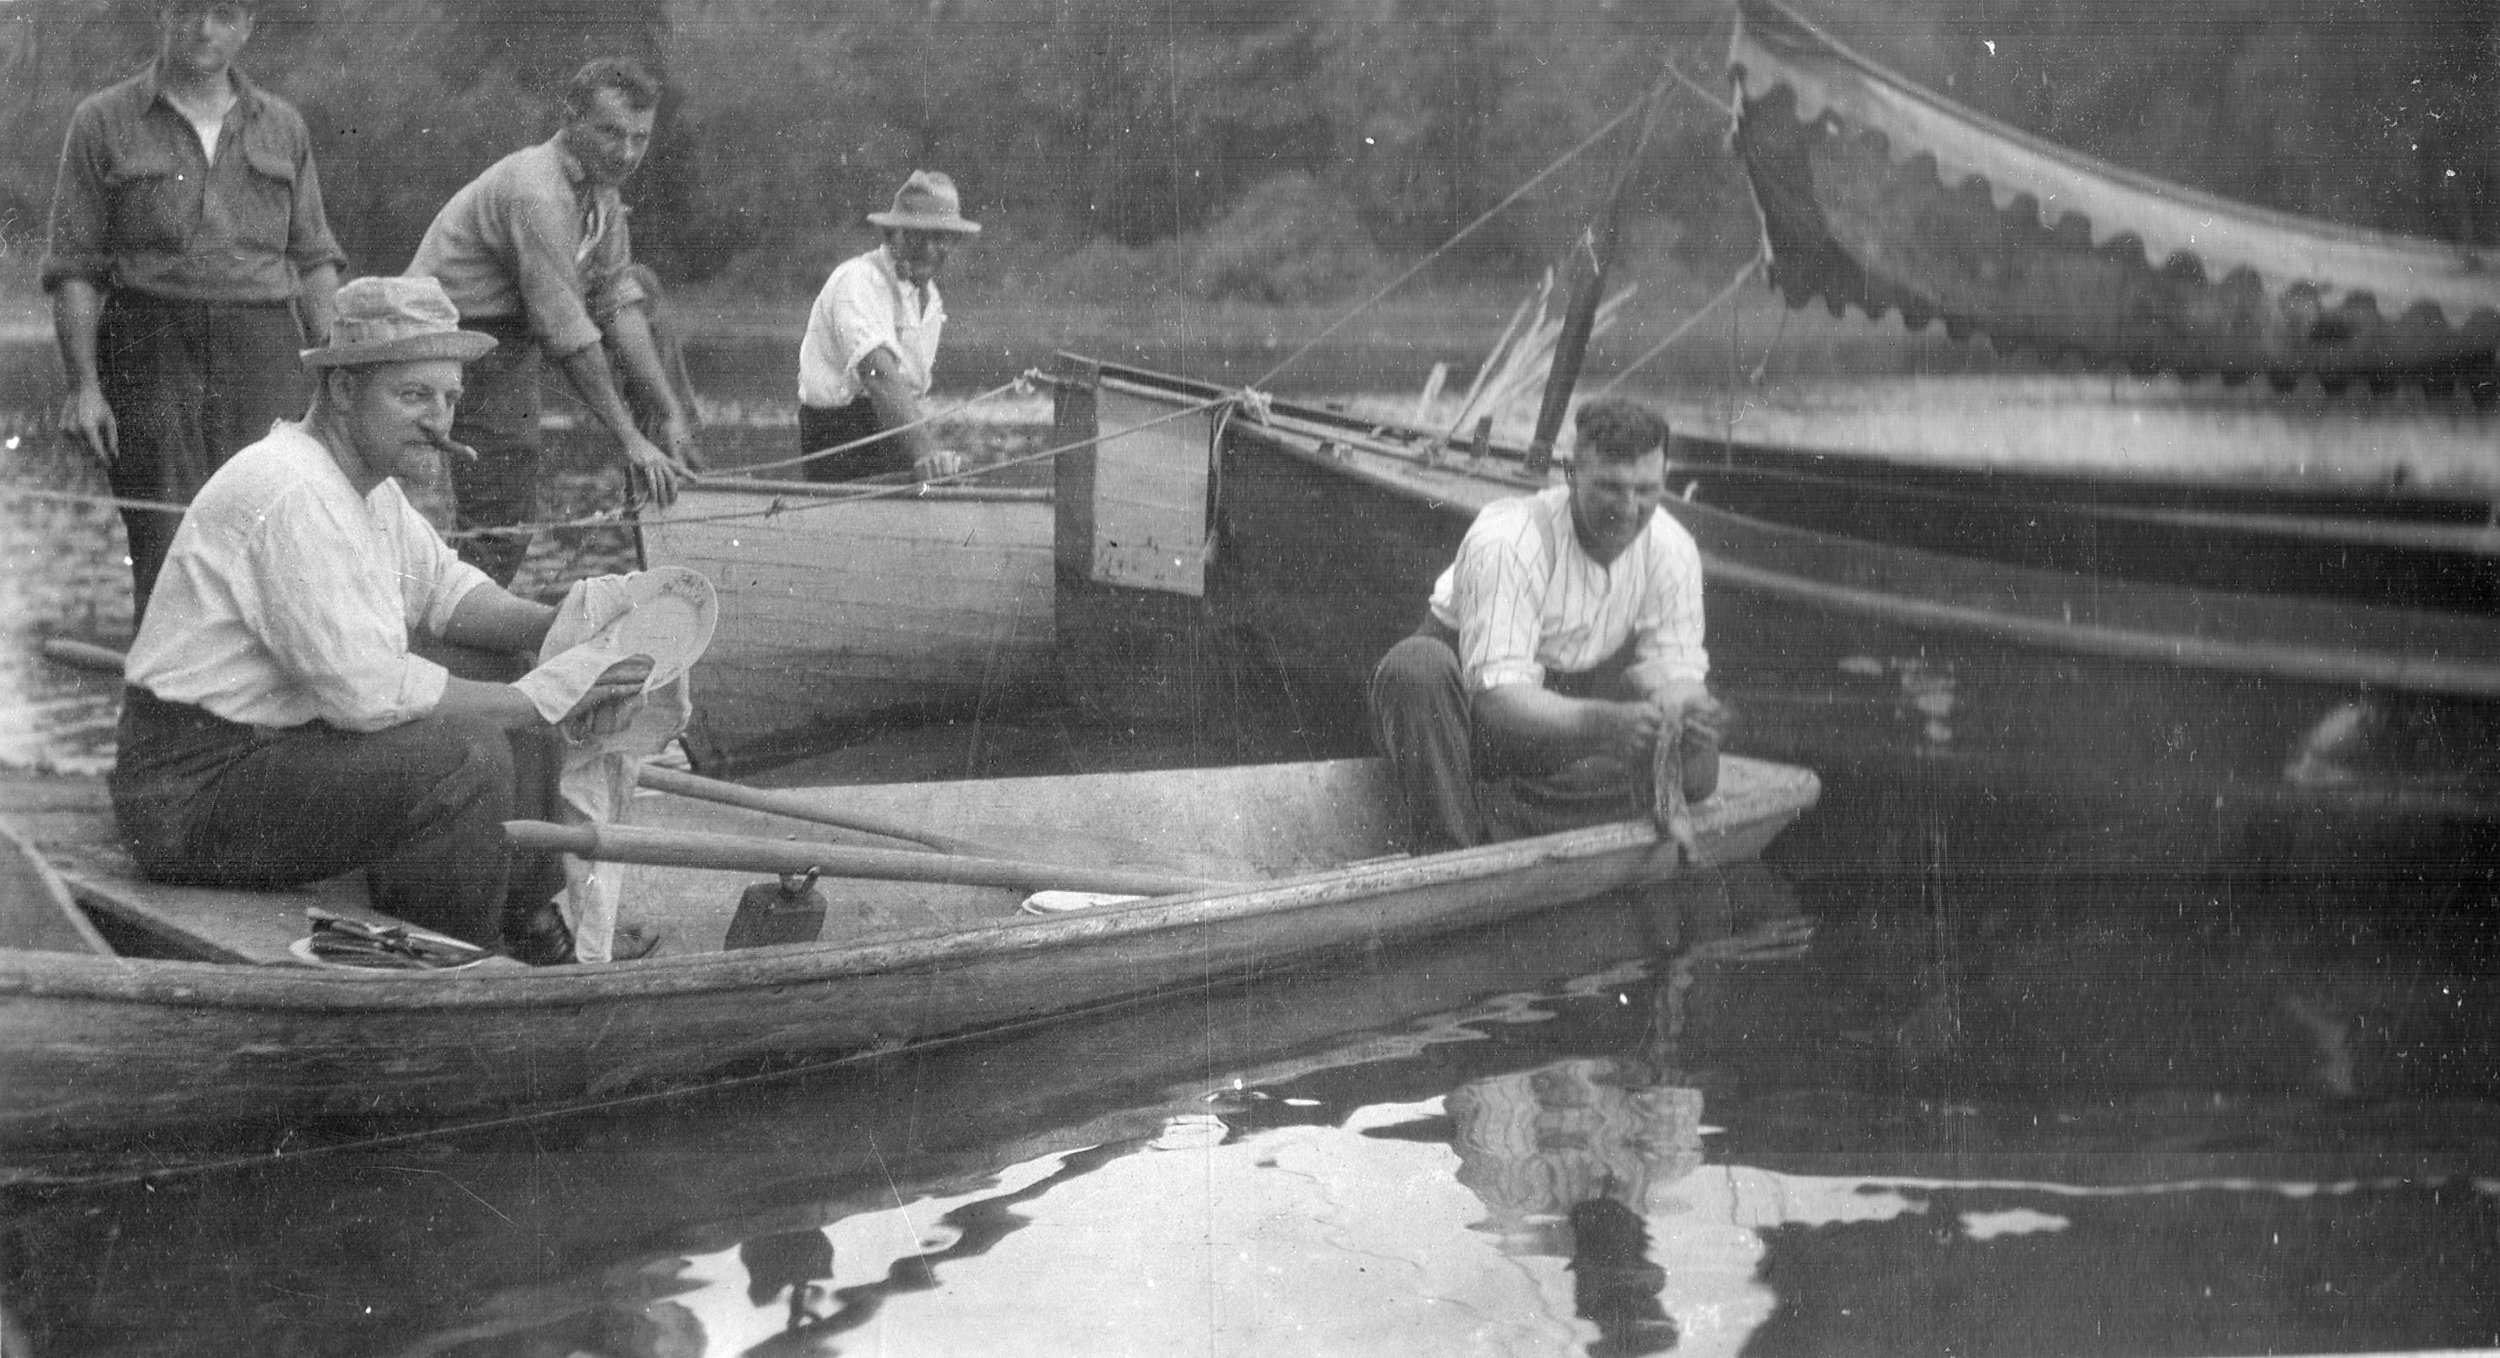 Fishermen in Boat